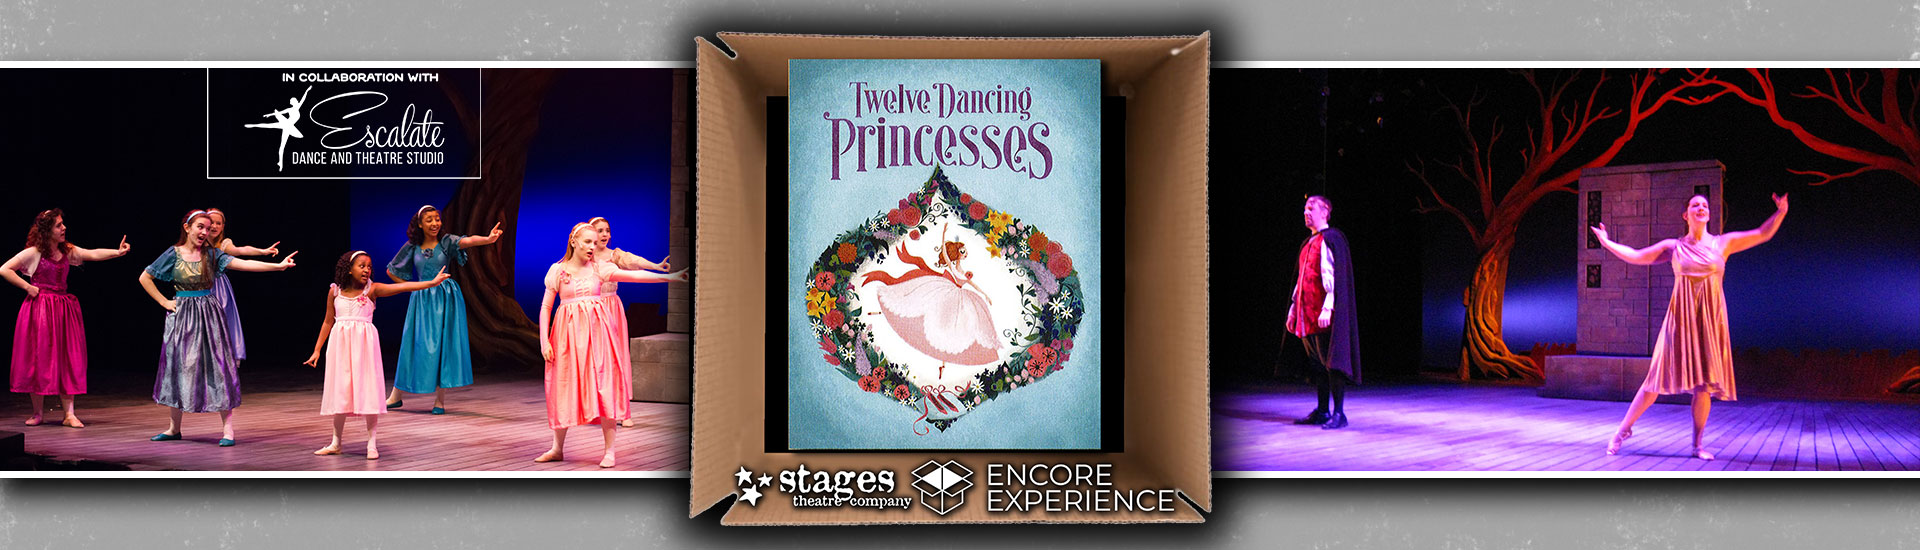 TWELVE DANCING PRINCESSES (APR 2 - MAY 13, 2021)